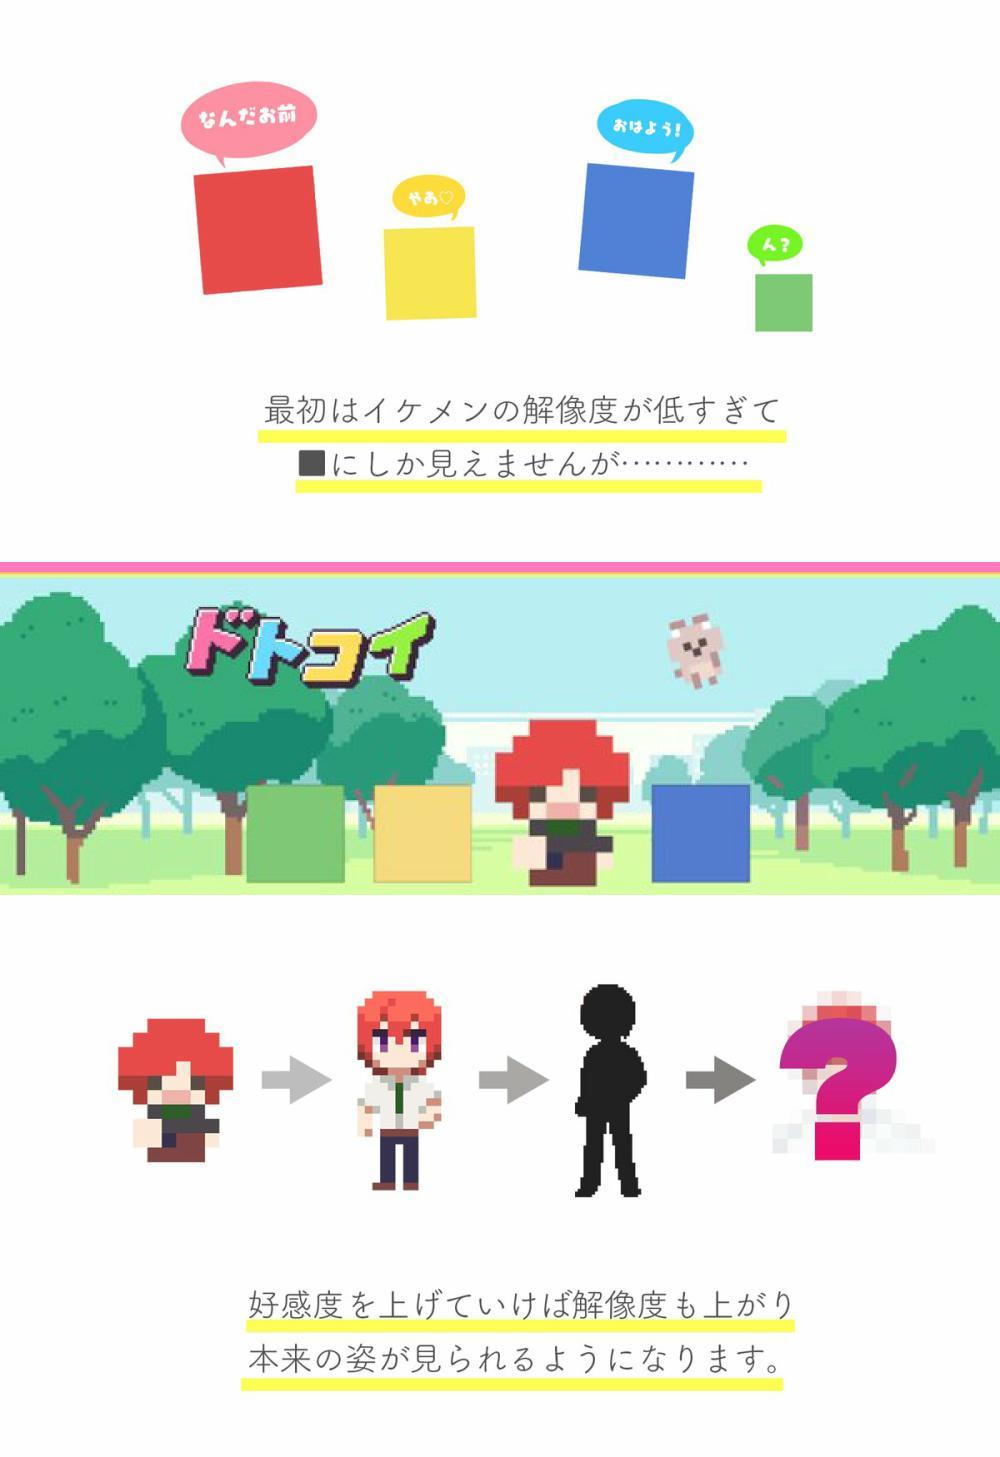 色块 像素 美男 乙女游戏 像素男友 将于8月25日推出全语音版本 Pc 来自网易大神圈子 游研社